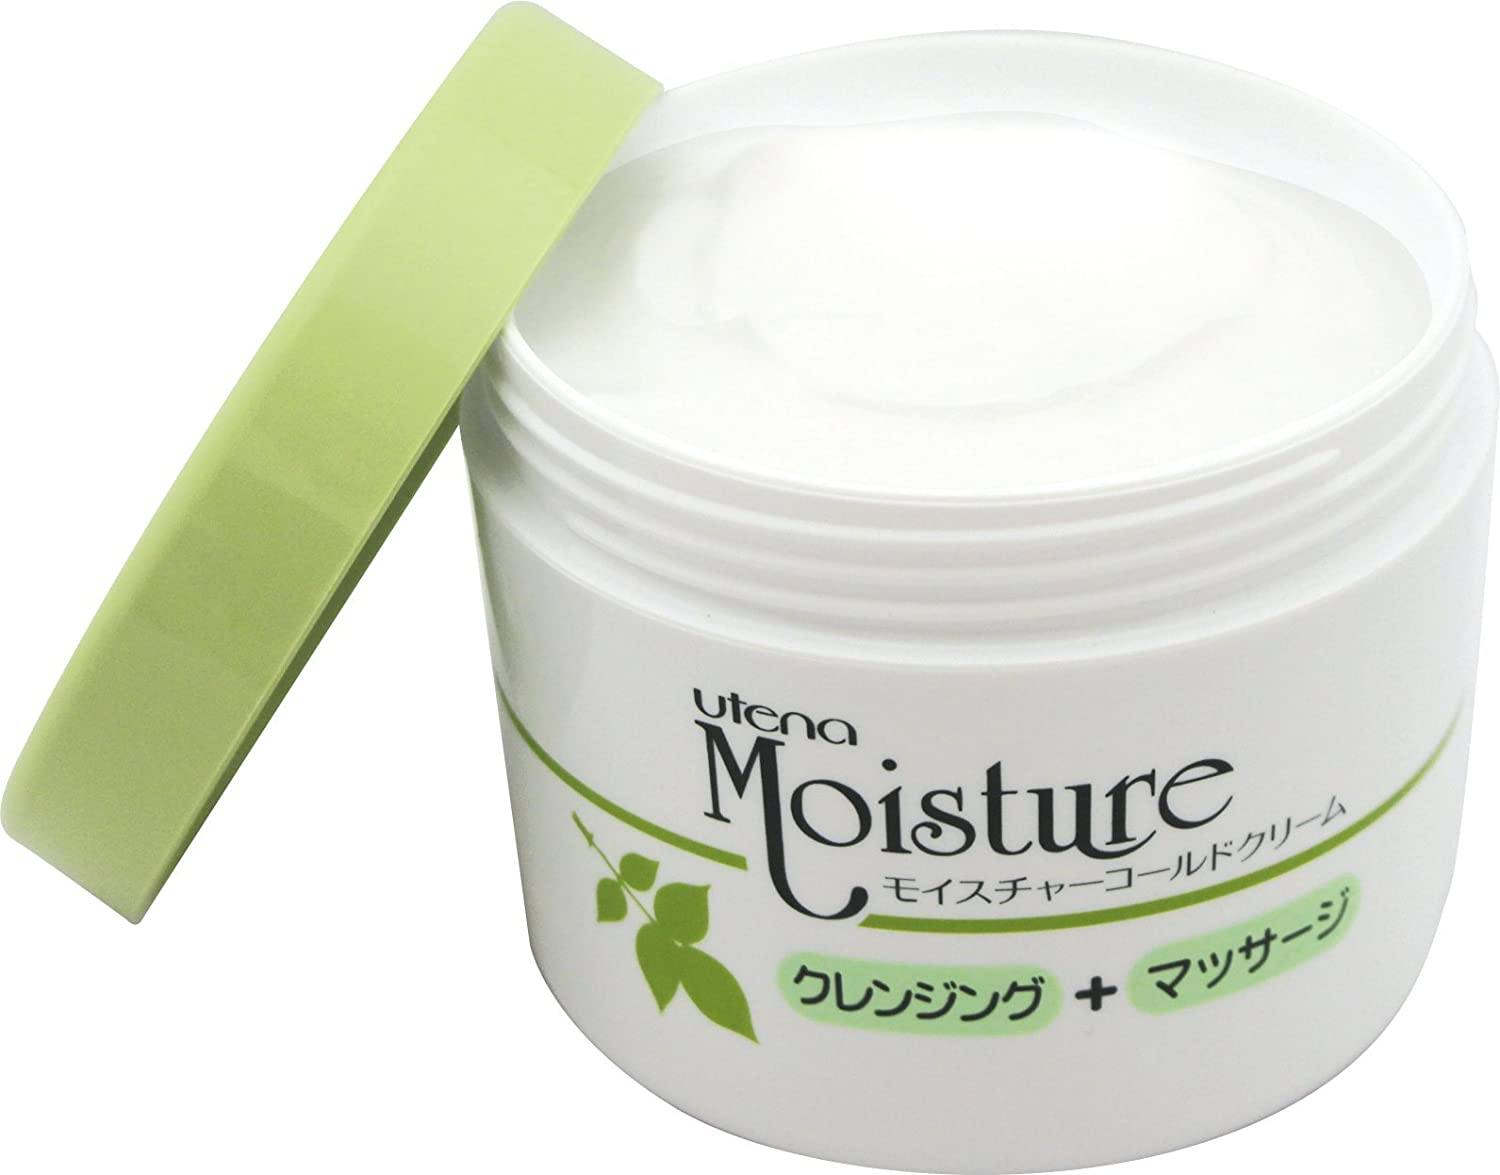 Utena Moisture cold cream rinse, wipe dual-purpose type 250g